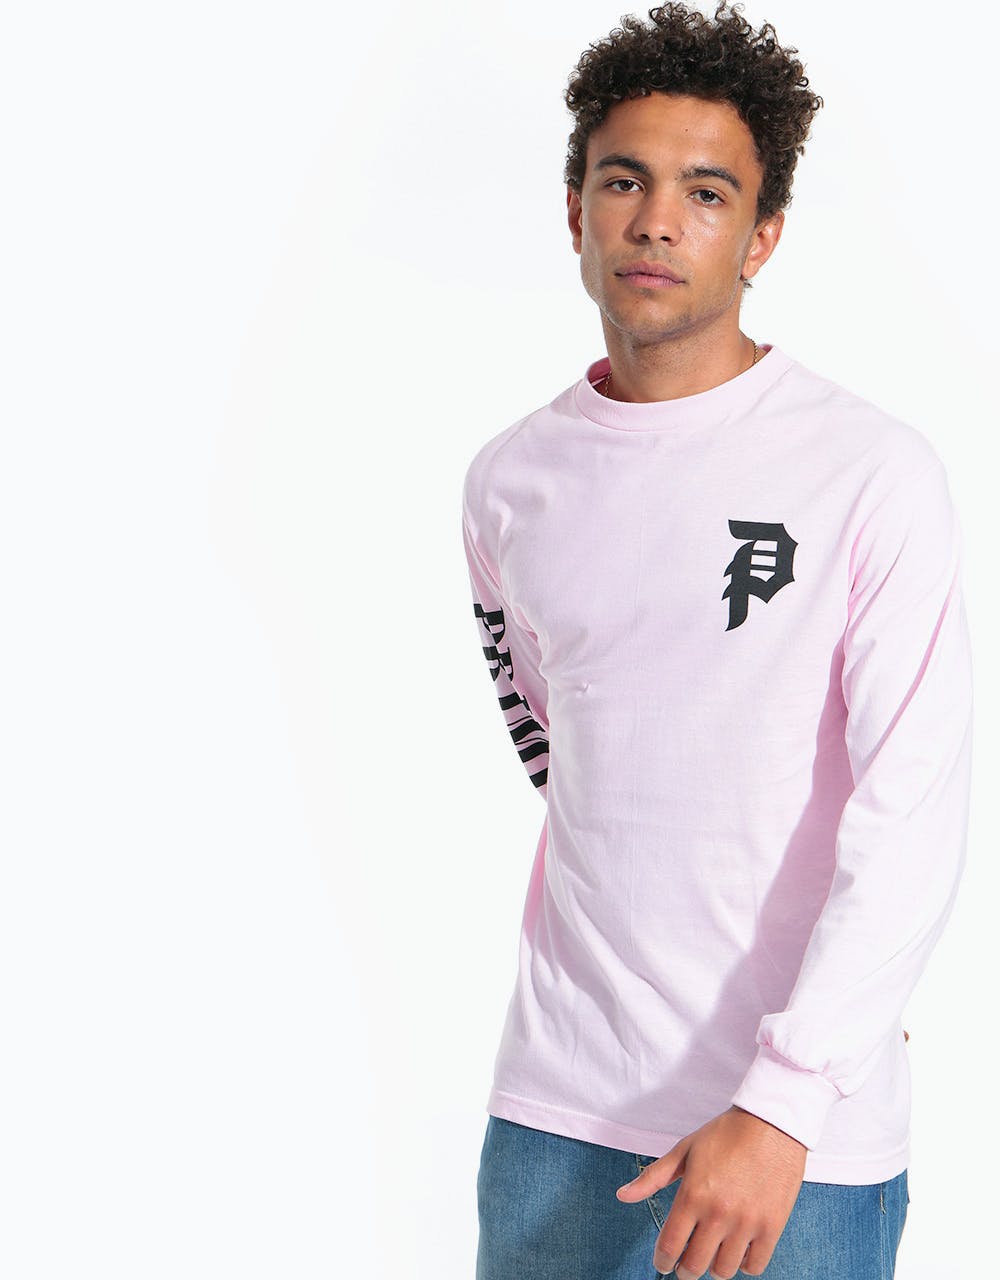 Primitive Shattered L/S T-Shirt - Pink